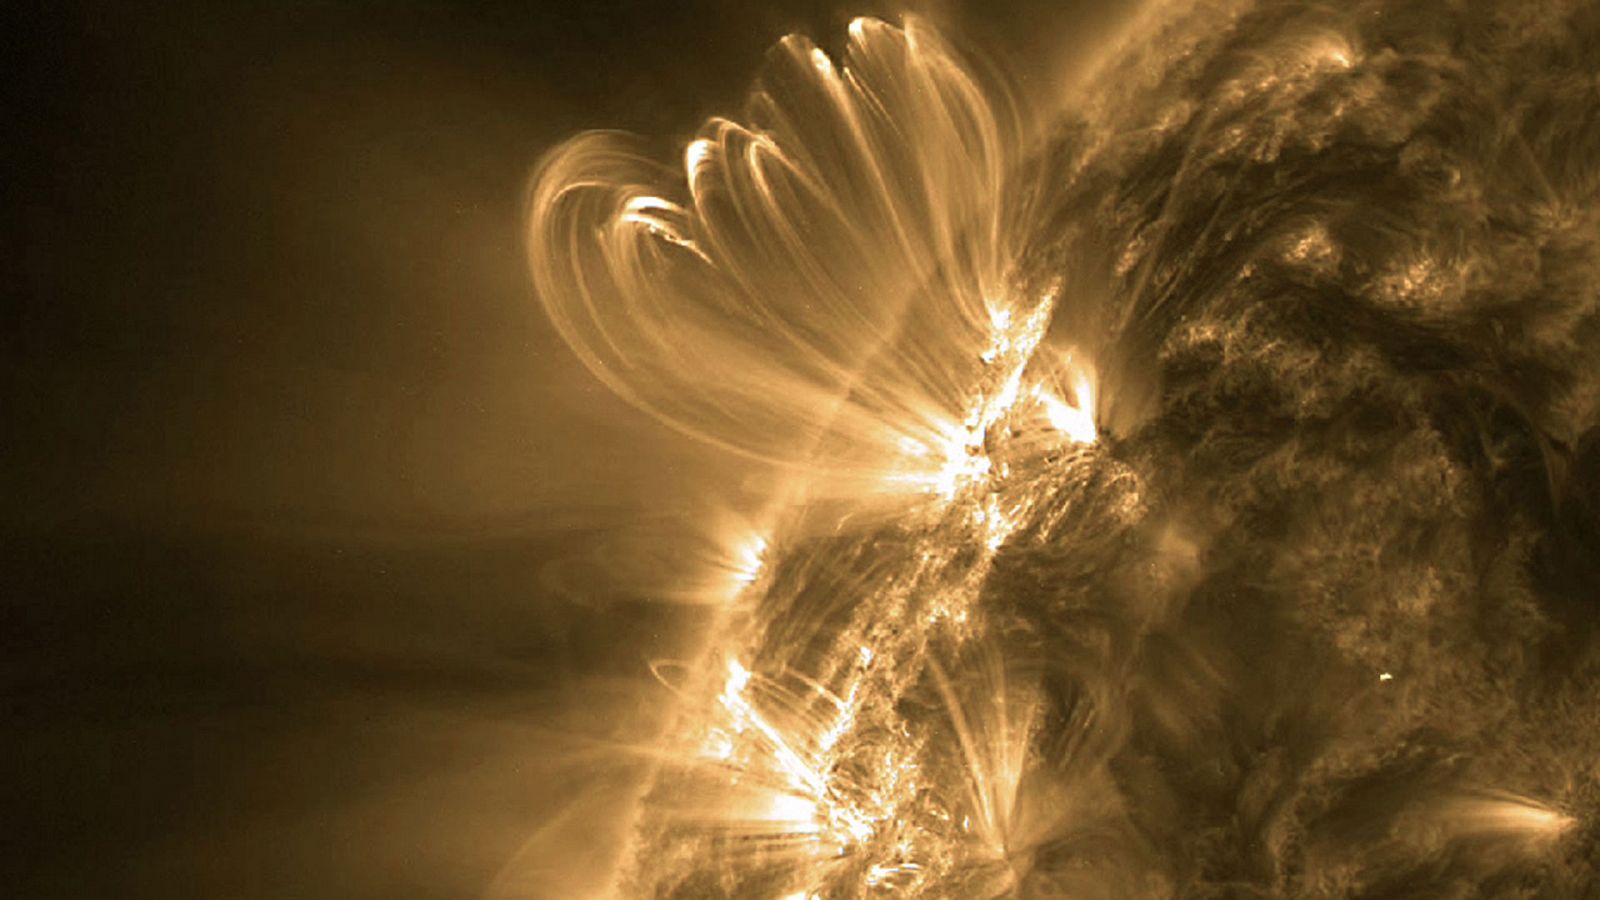 El Sol: 7 curiosidades científicas increíbles sobre nuestra estrella